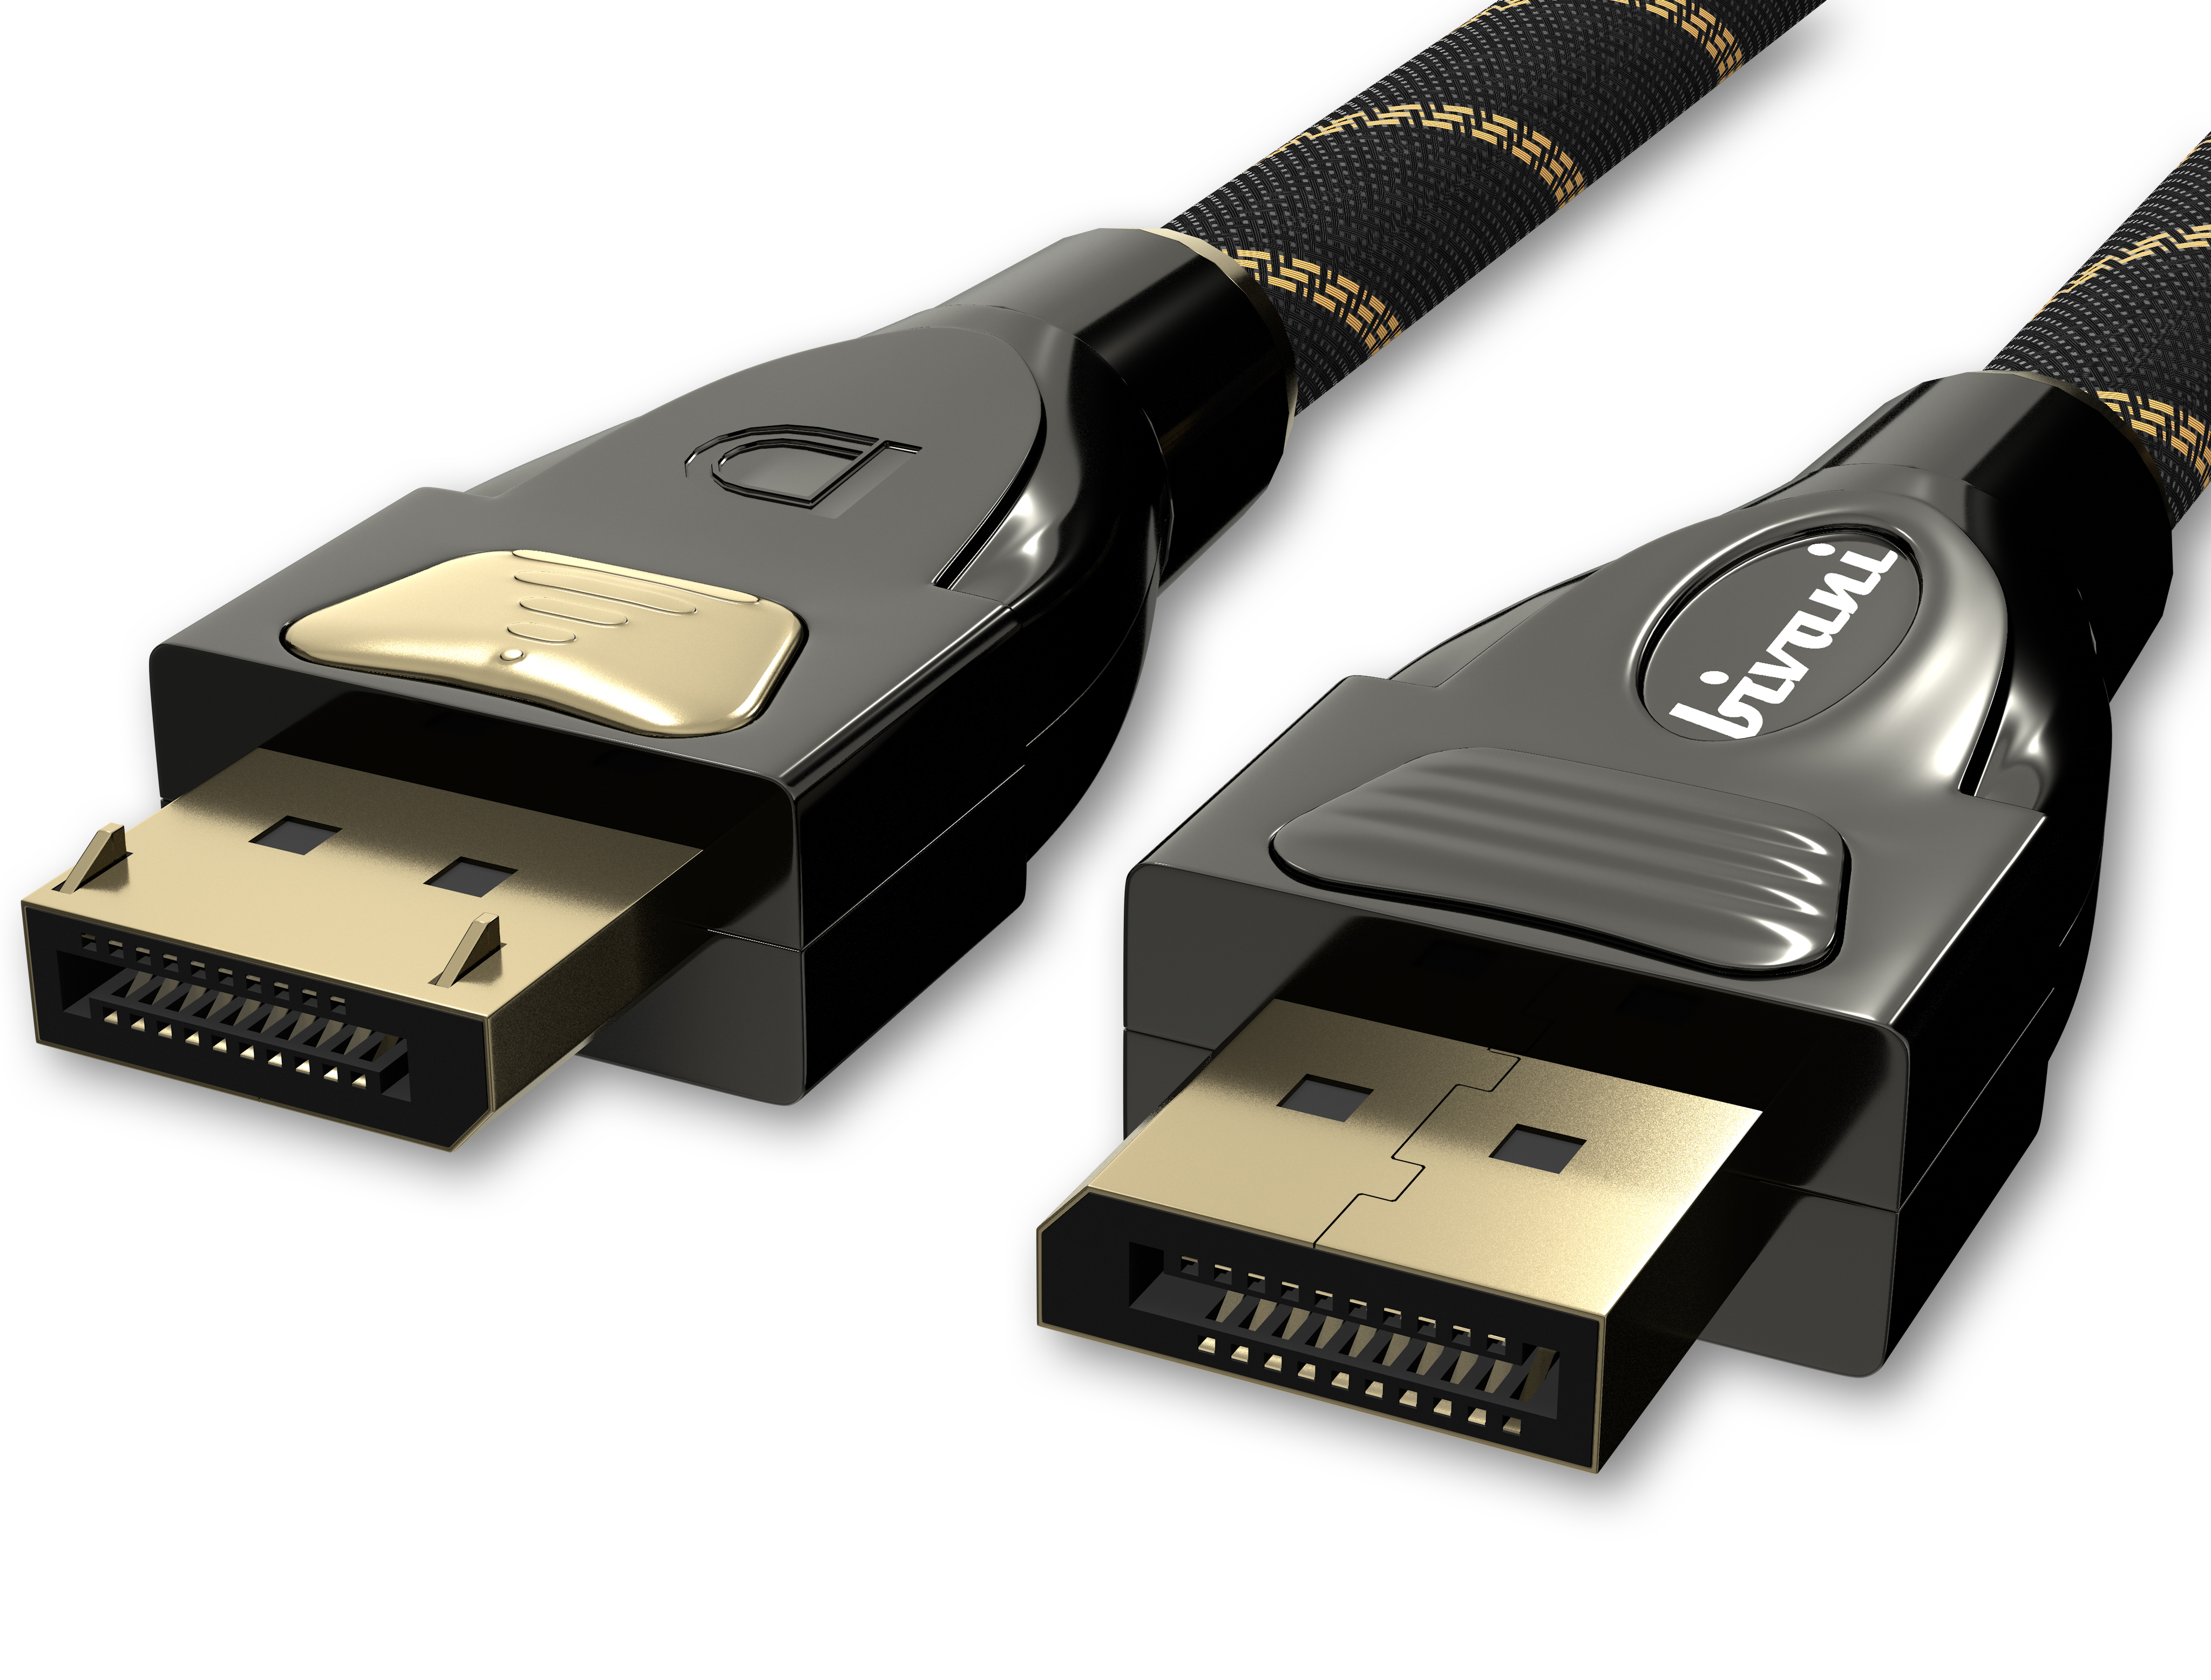 1.4 DisplayPort BIVANI m 2 8K - 32,4 Elite-Series, Gbps Kabel Premium Kabel,